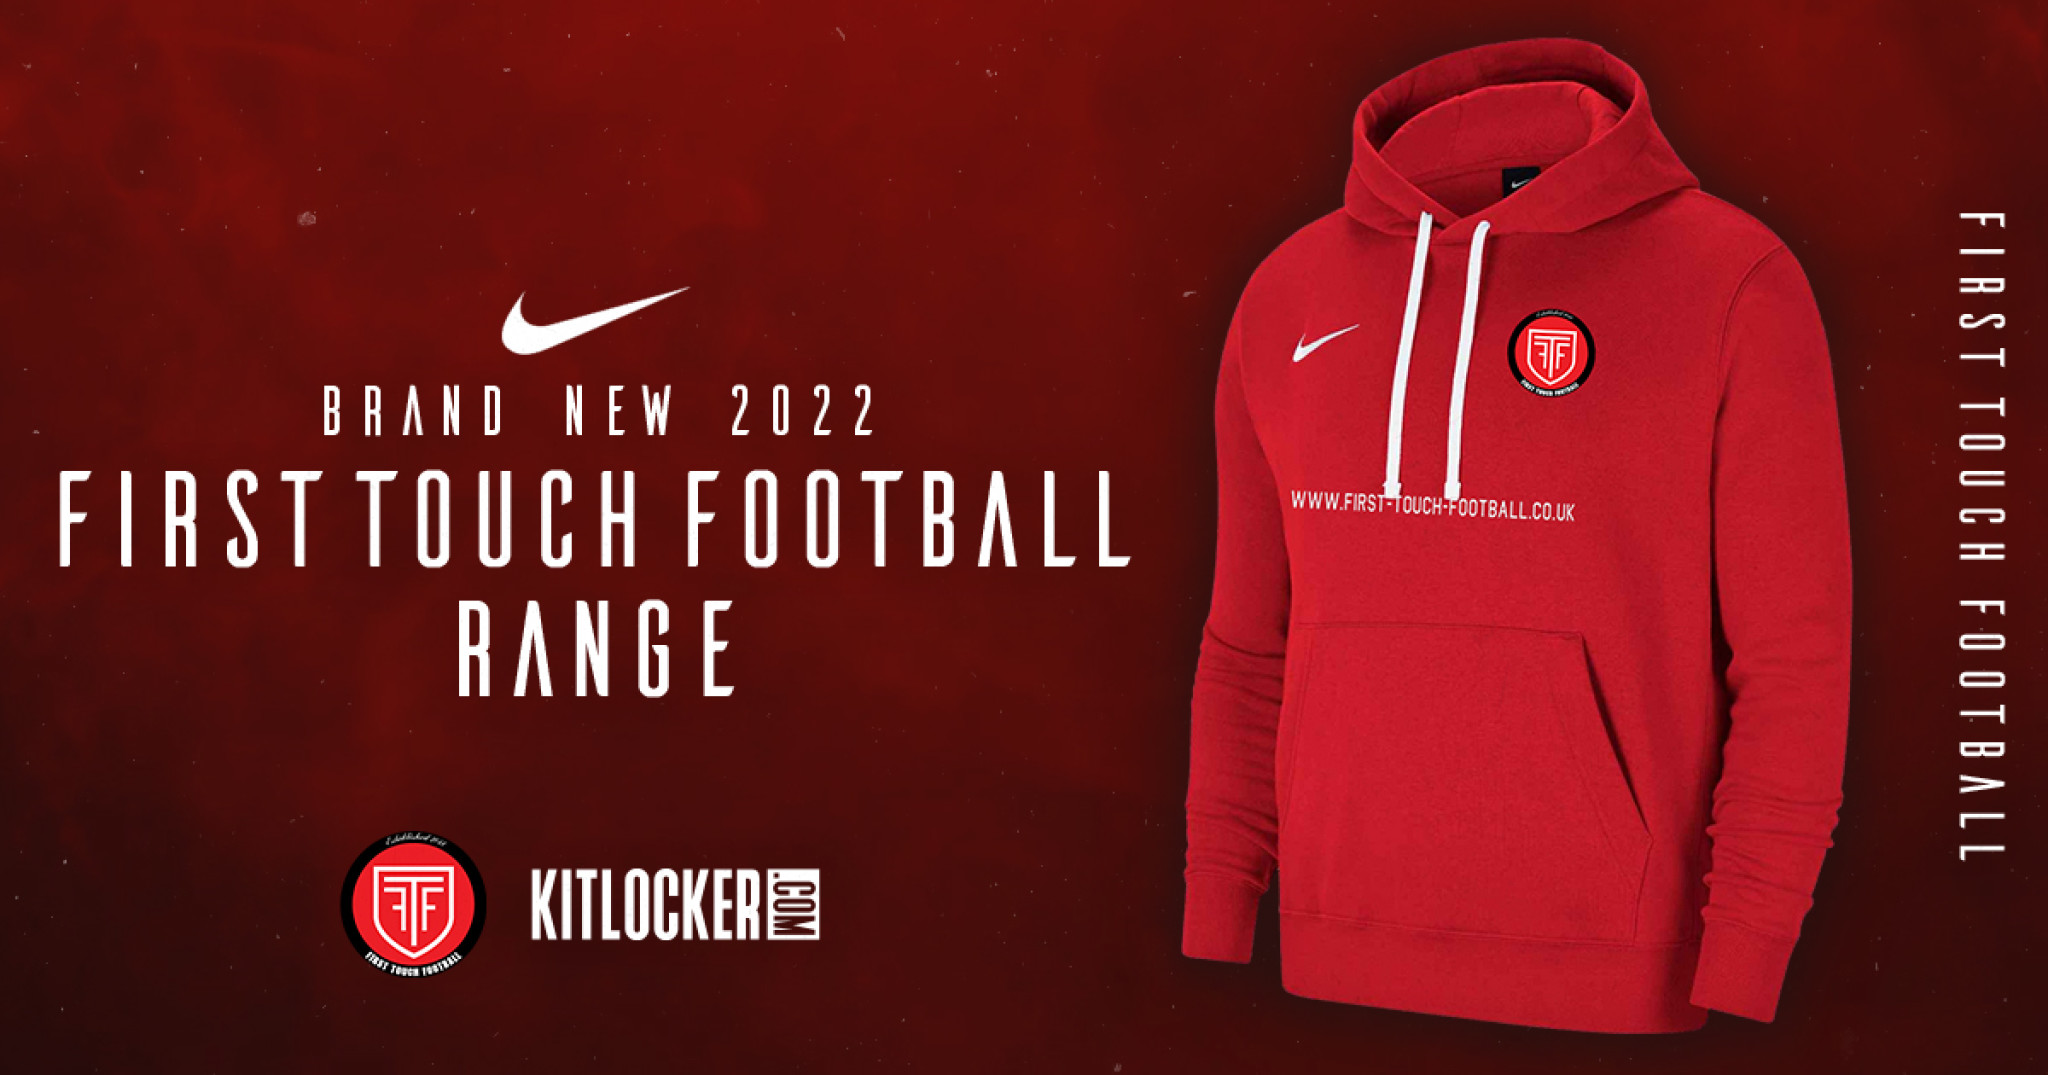 Twitter - Brand New Nike Ranges - First TouchFootball.jpg